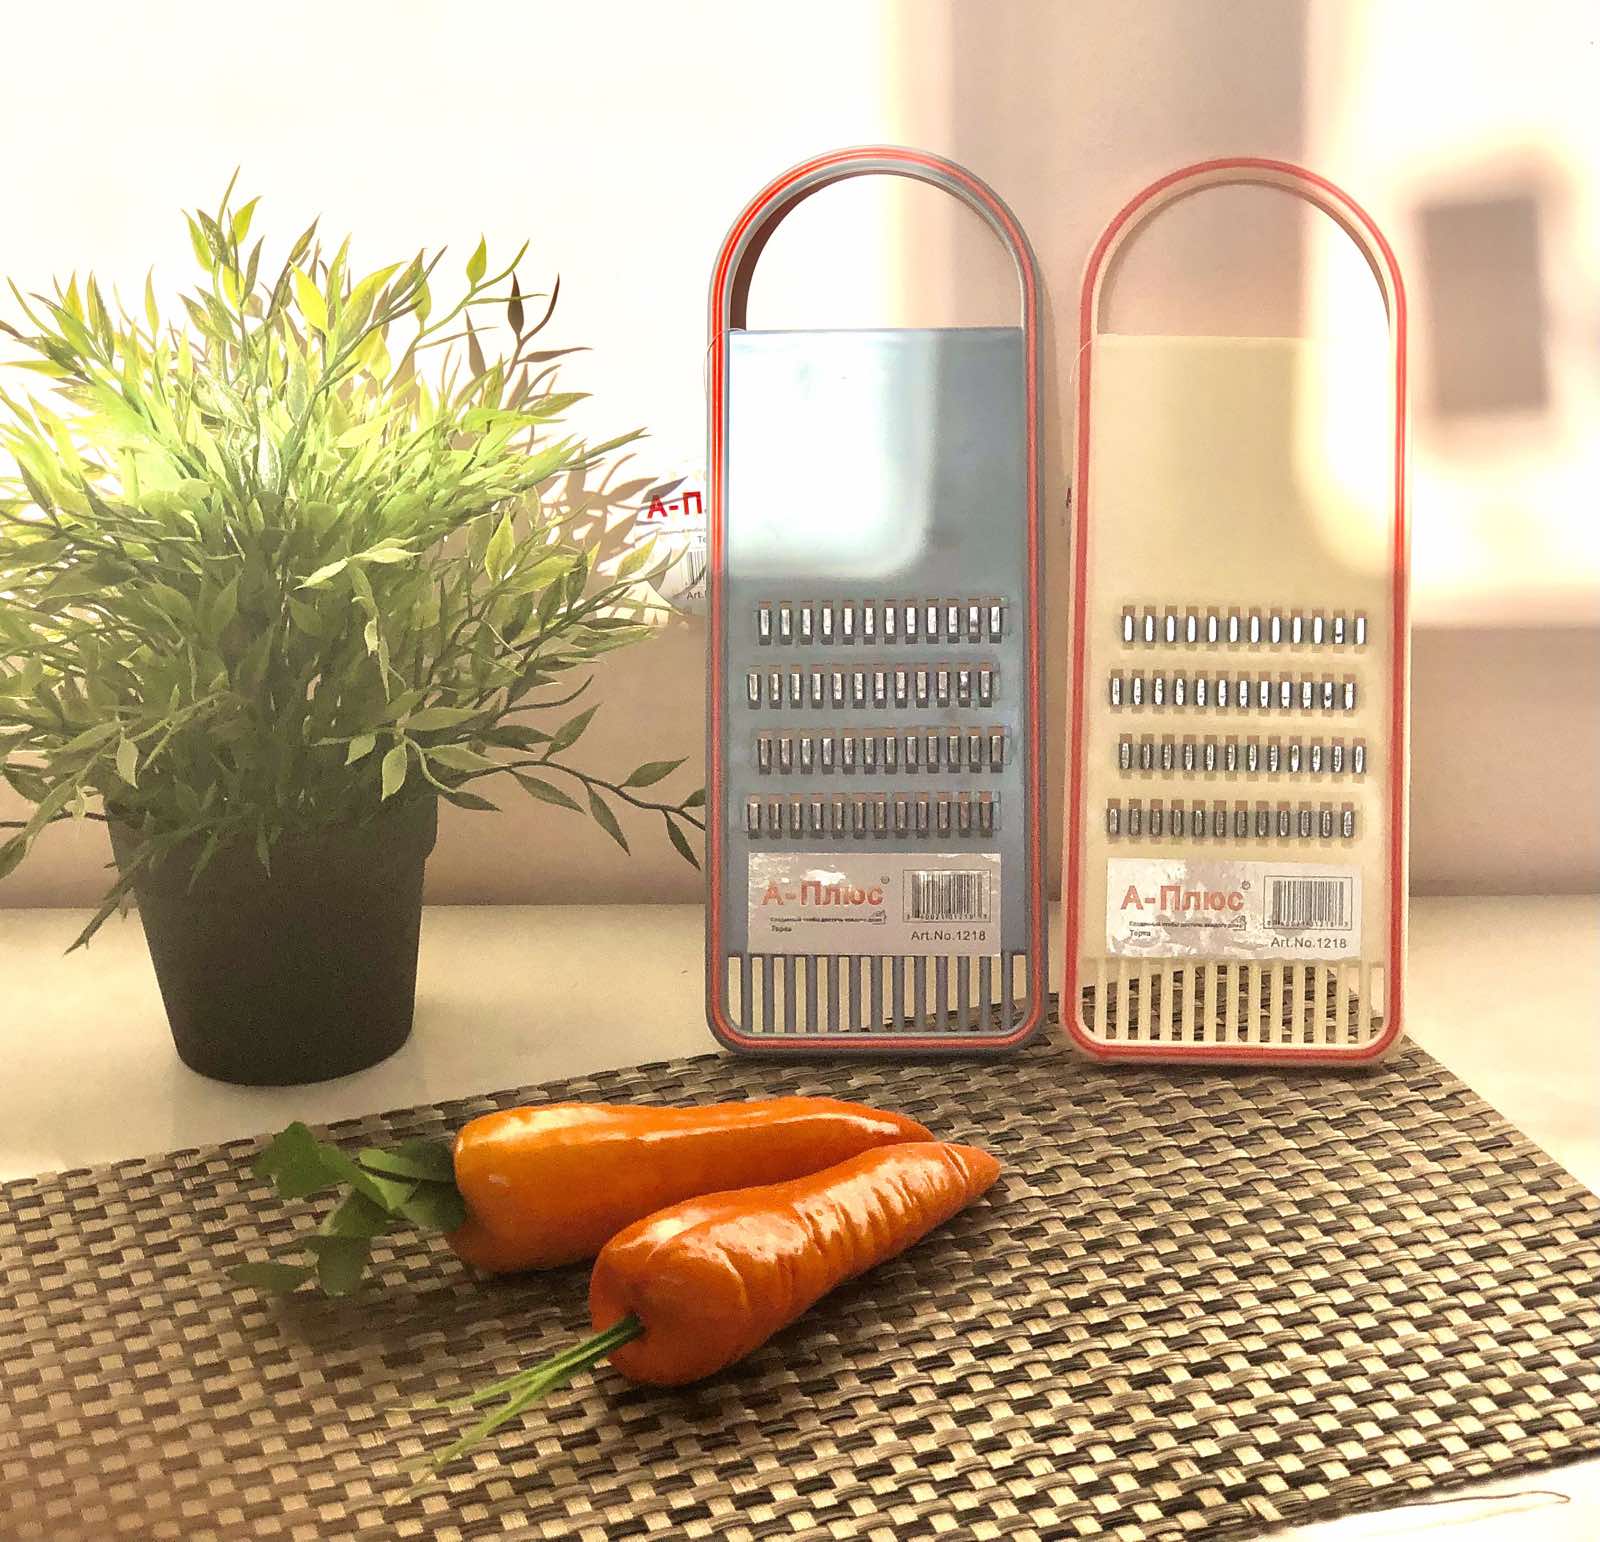 Терка для корейской моркови 1218 ✅ базовая цена $0.83 ✔ Опт ✔ Скидки ✔ Заходите! - Интернет-магазин ✅ Фортуна-опт ✅